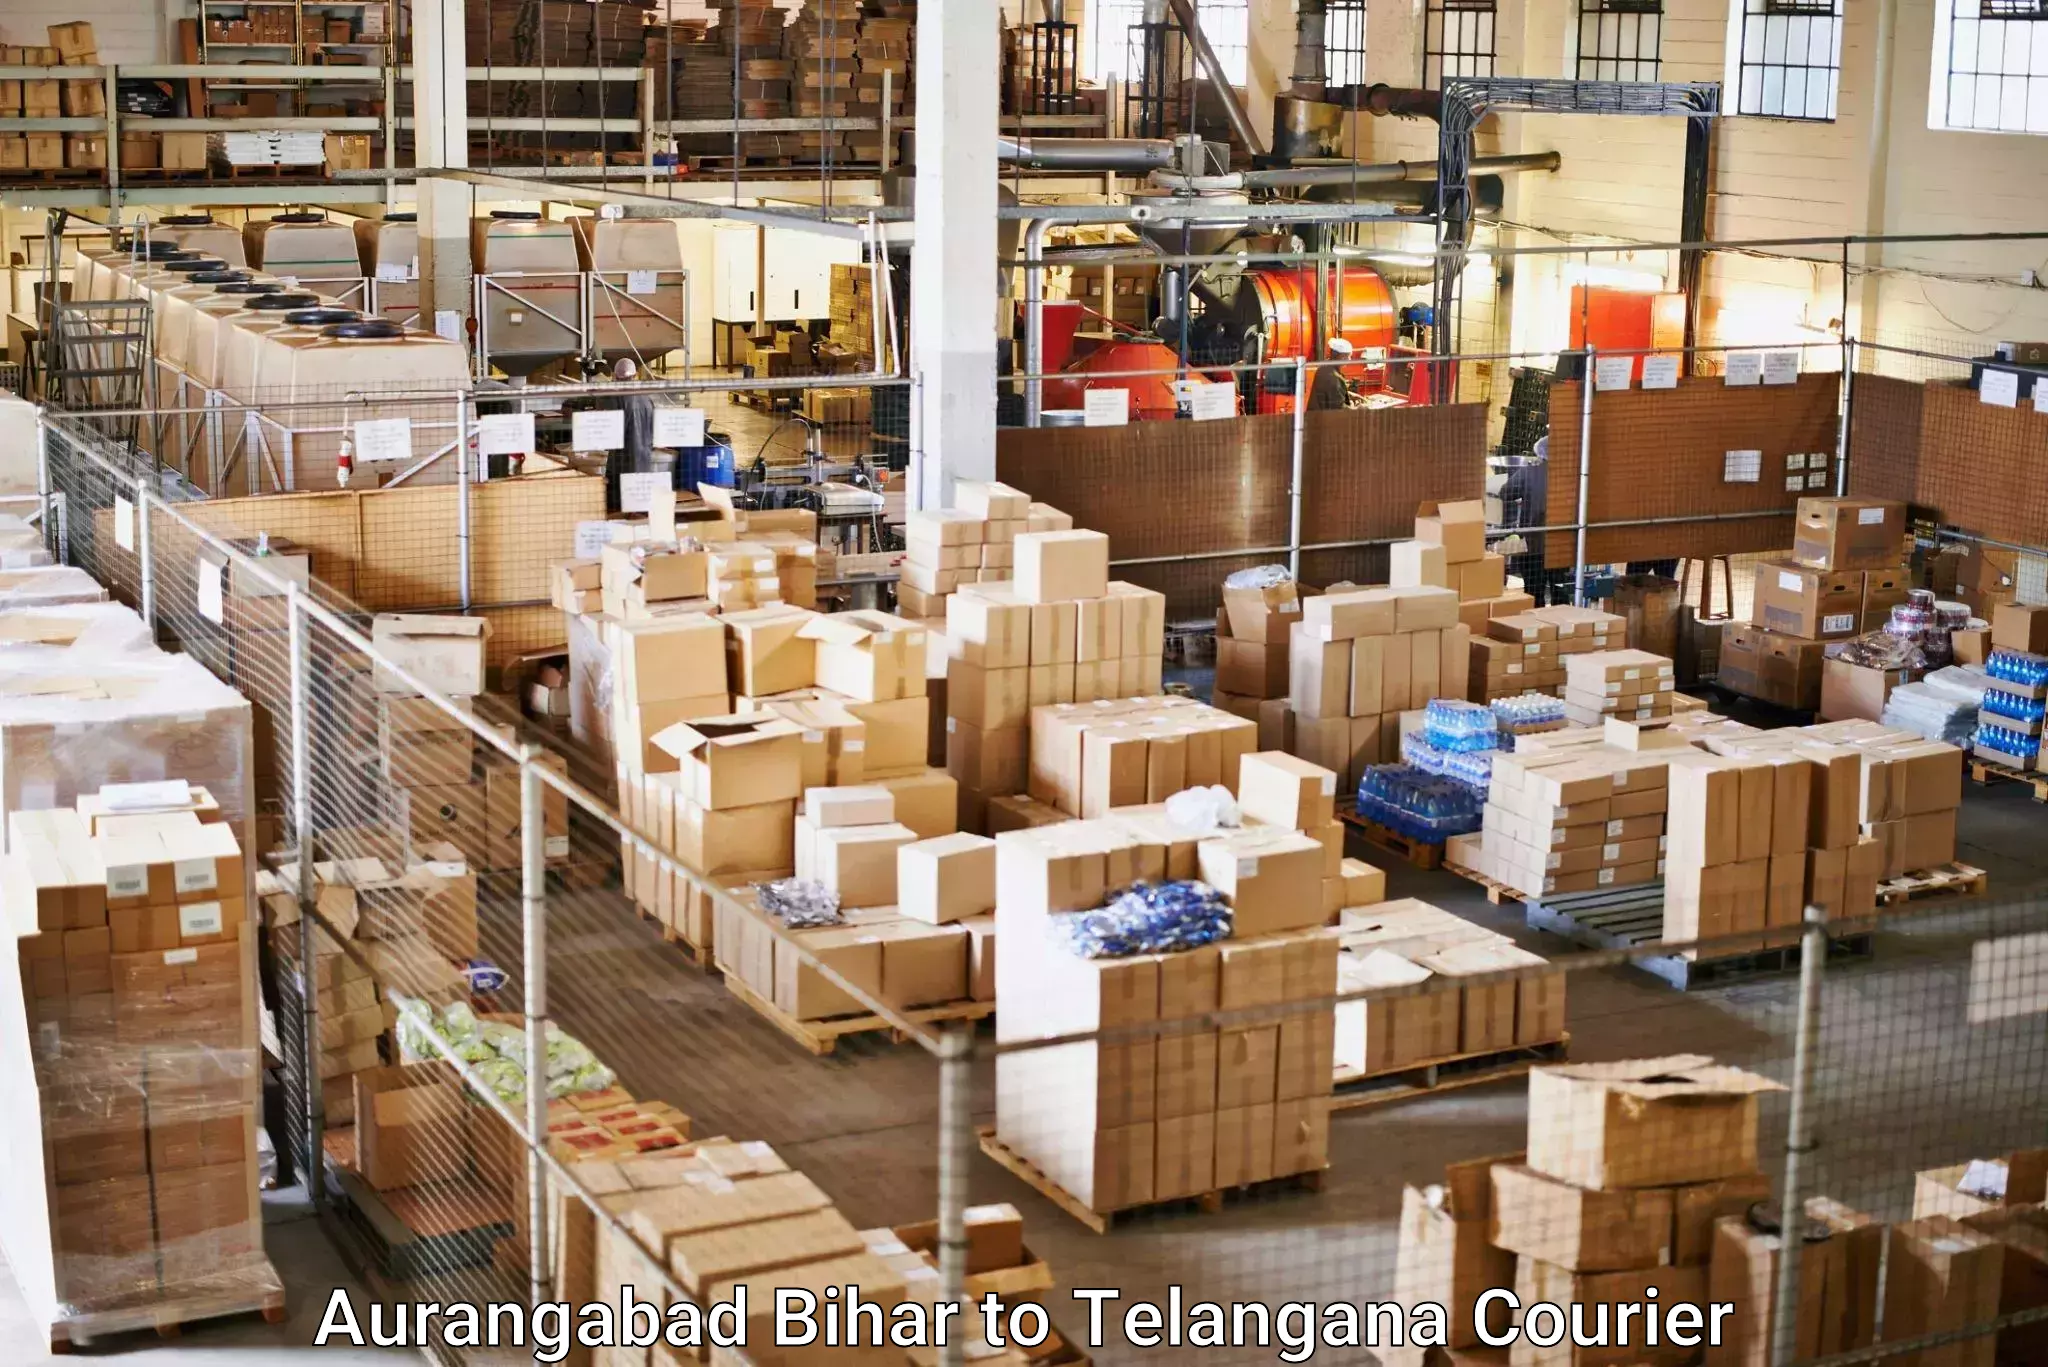 Nationwide parcel services Aurangabad Bihar to Achampet